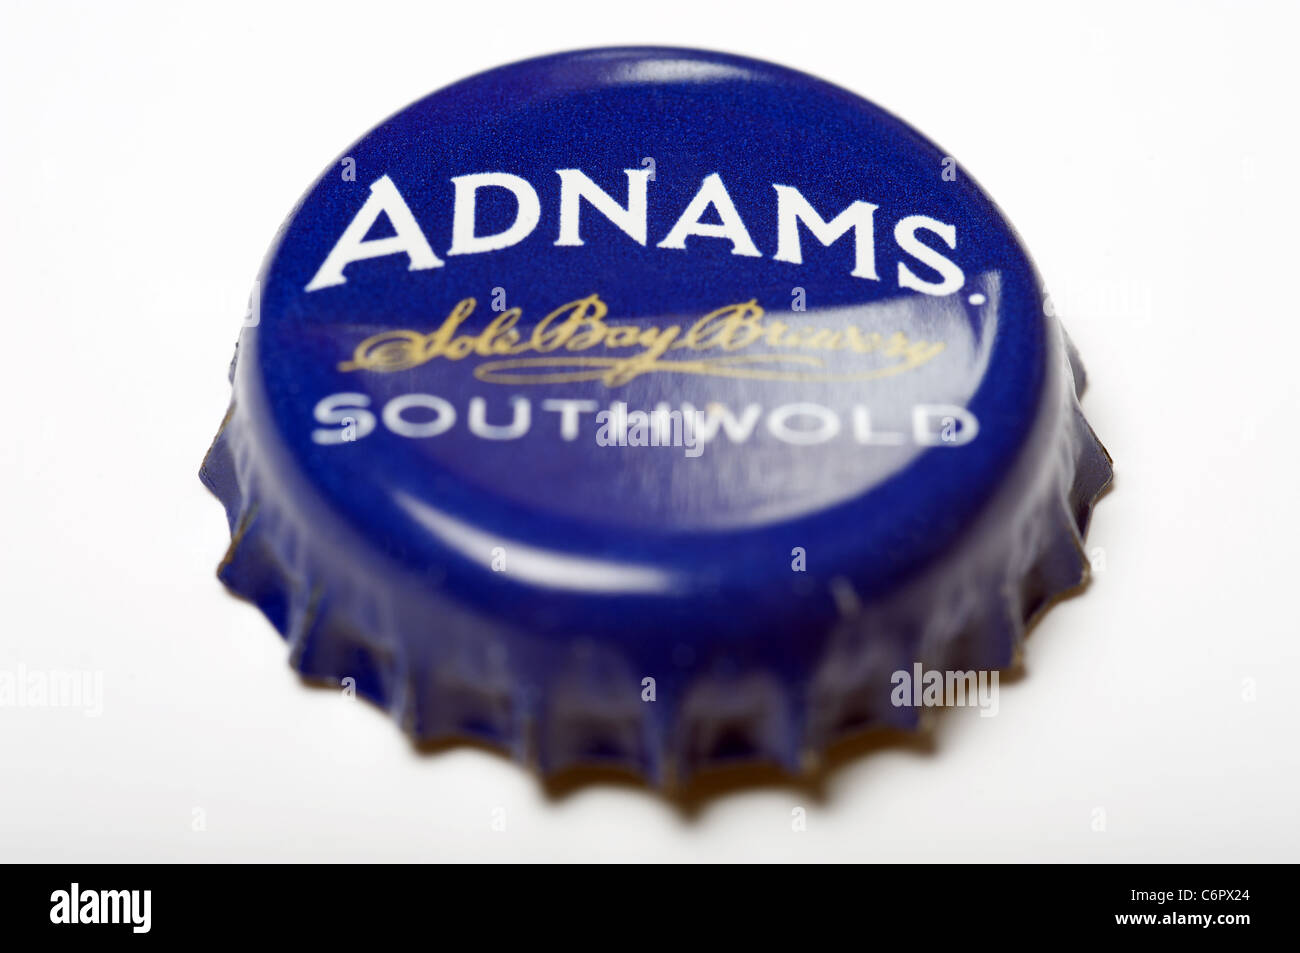 Adnams beer bottle top Stock Photo